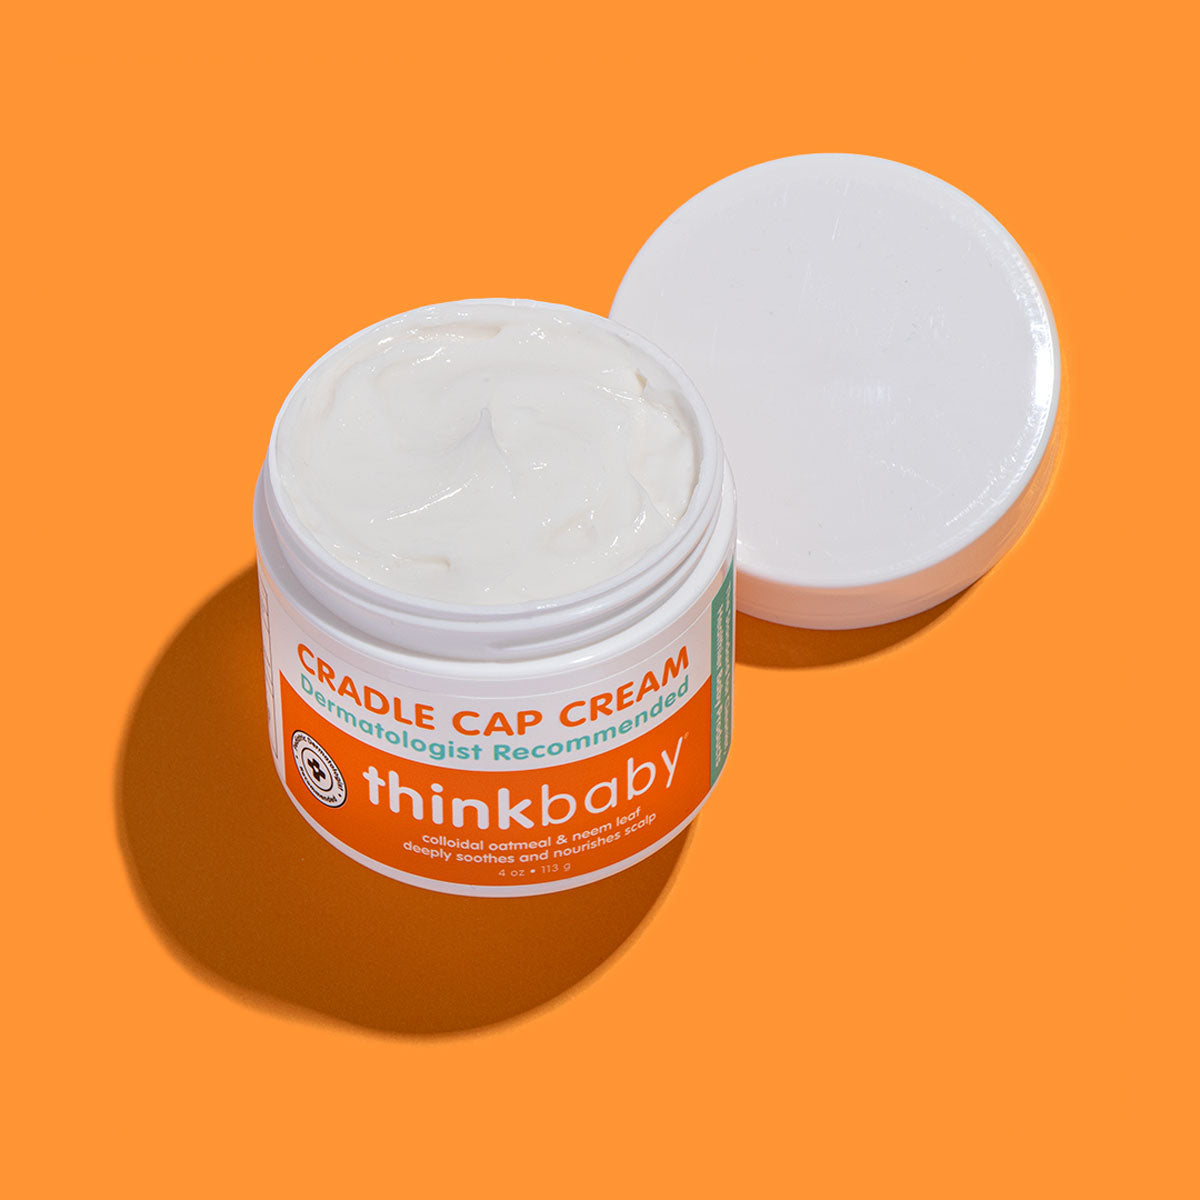 Thinkbaby Cradle Cap Cream 4 OZ